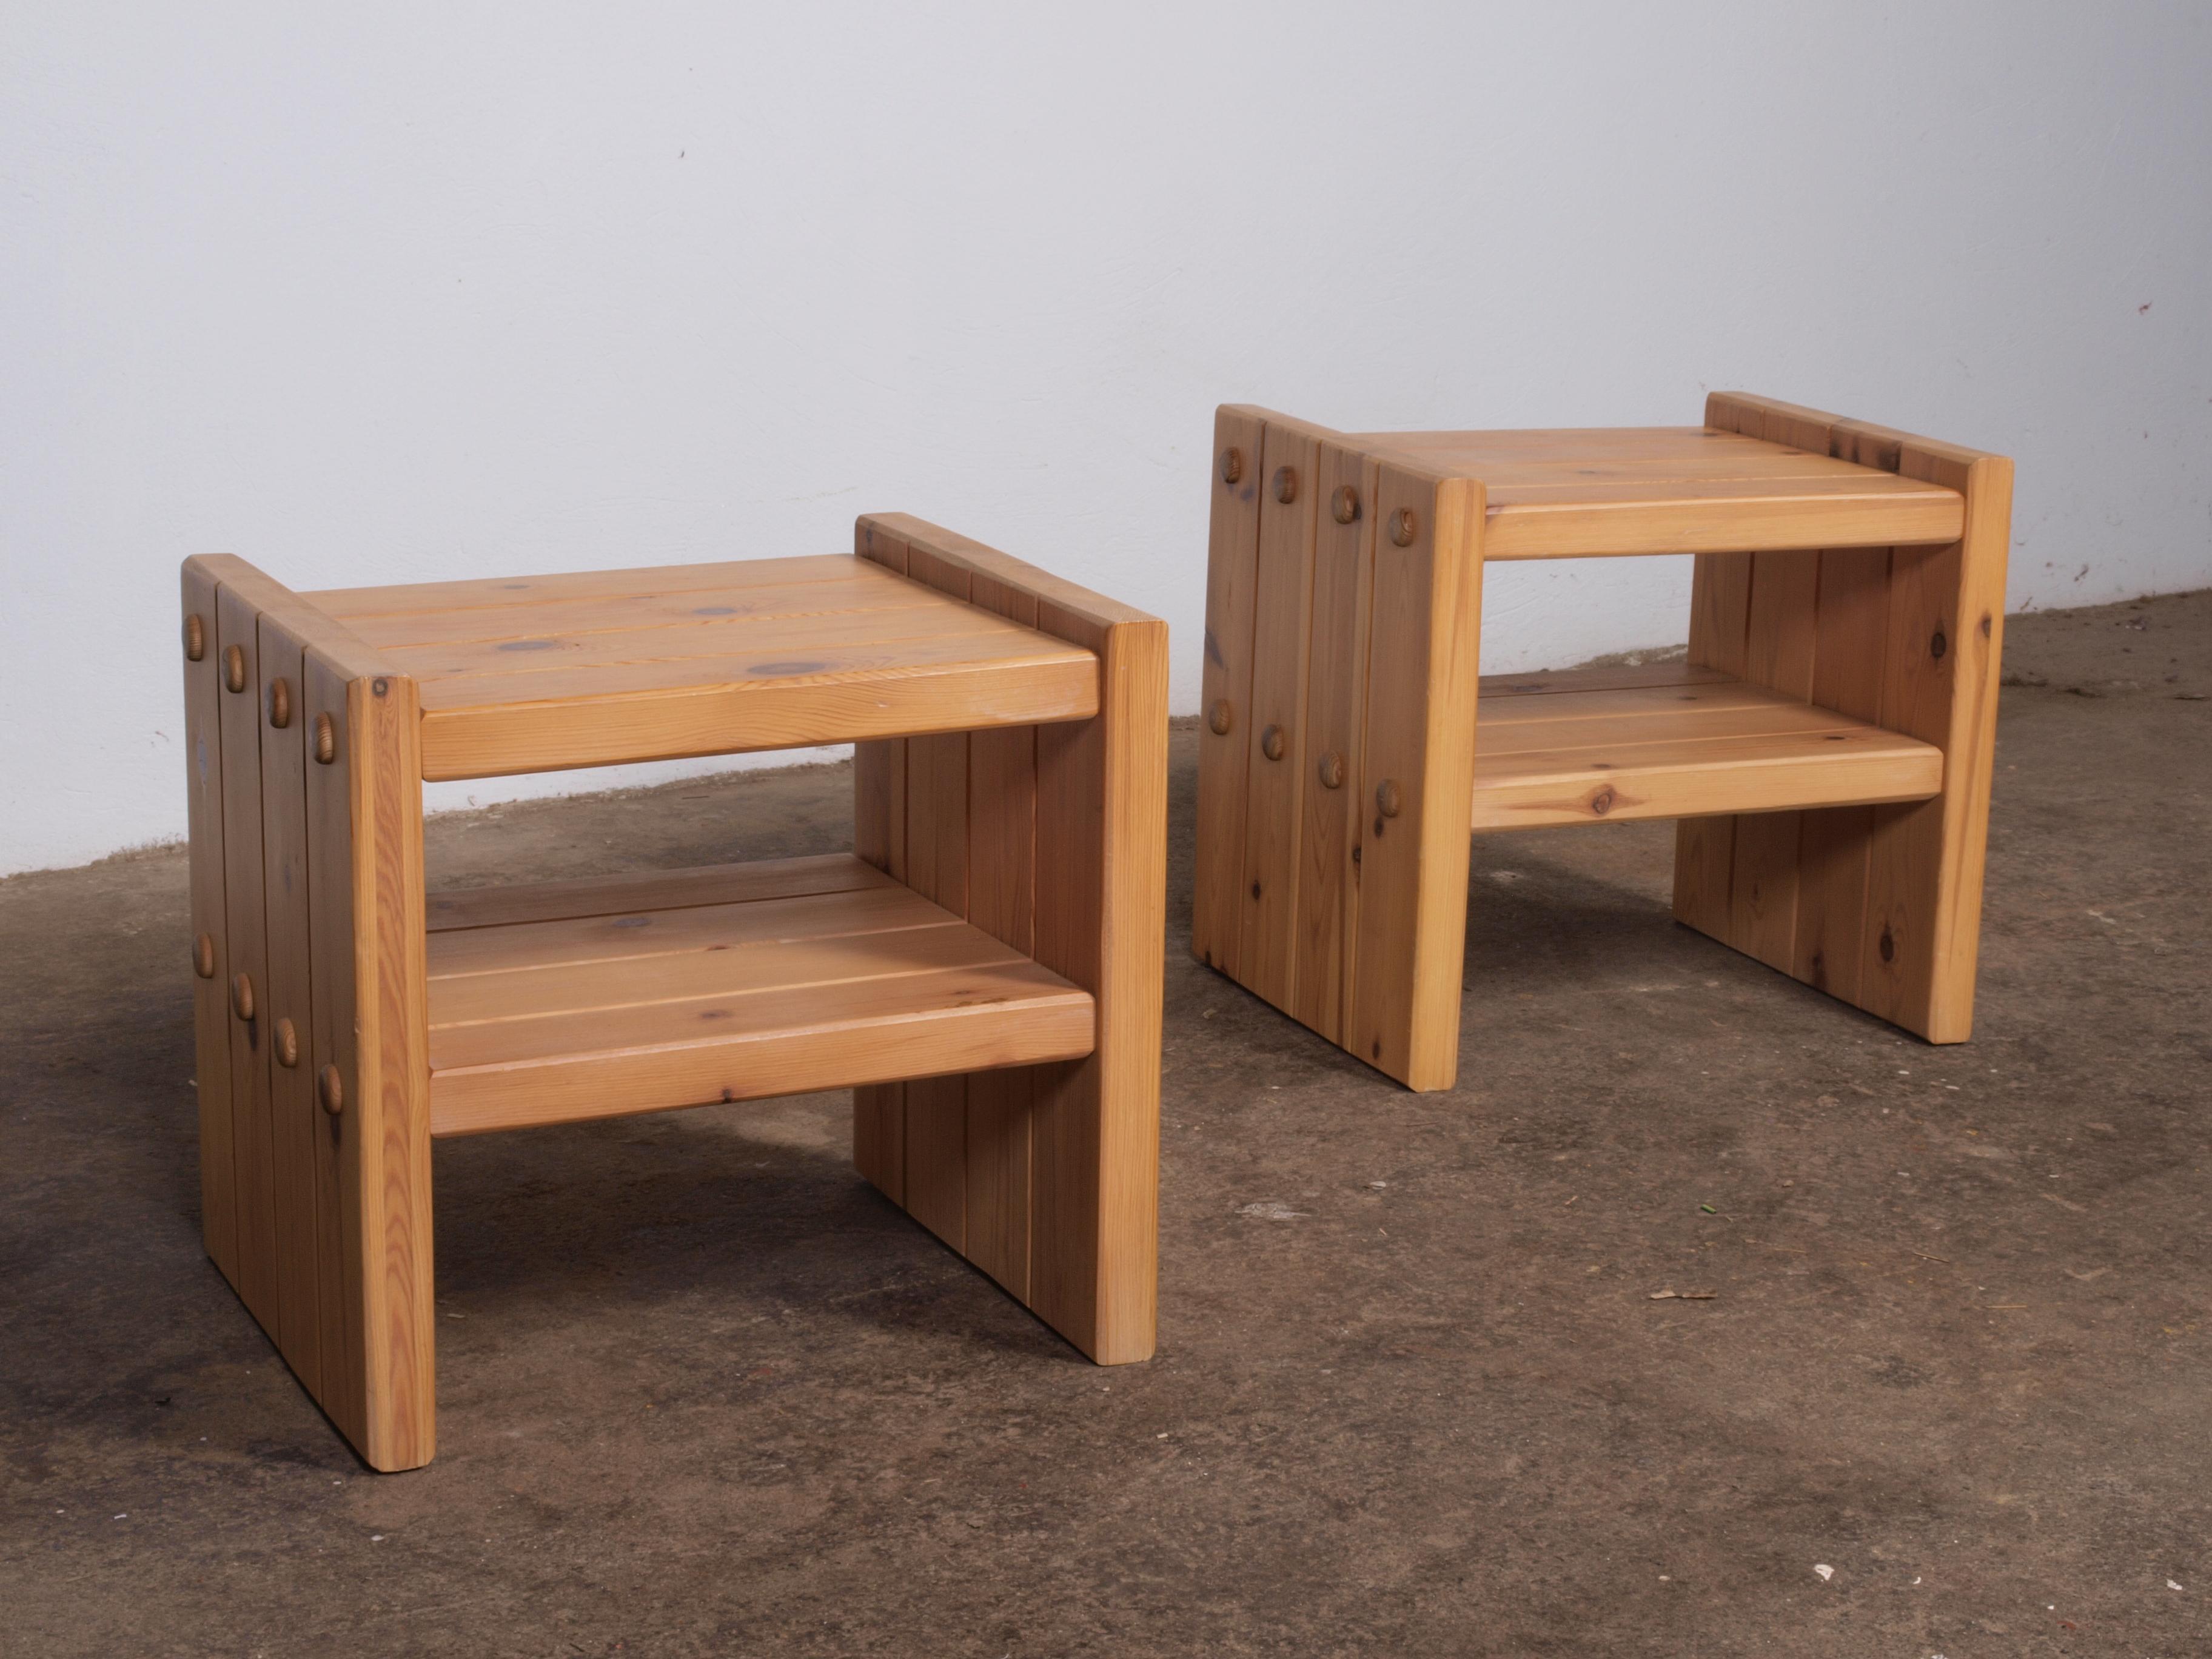 Paire de tables de chevet minimalistes, conçues et fabriquées au Danemark dans les années 1970. Ces tables de nuit présentent une esthétique intemporelle grâce à leur construction en pin massif teinté. L'influence scandinave est évidente dans les